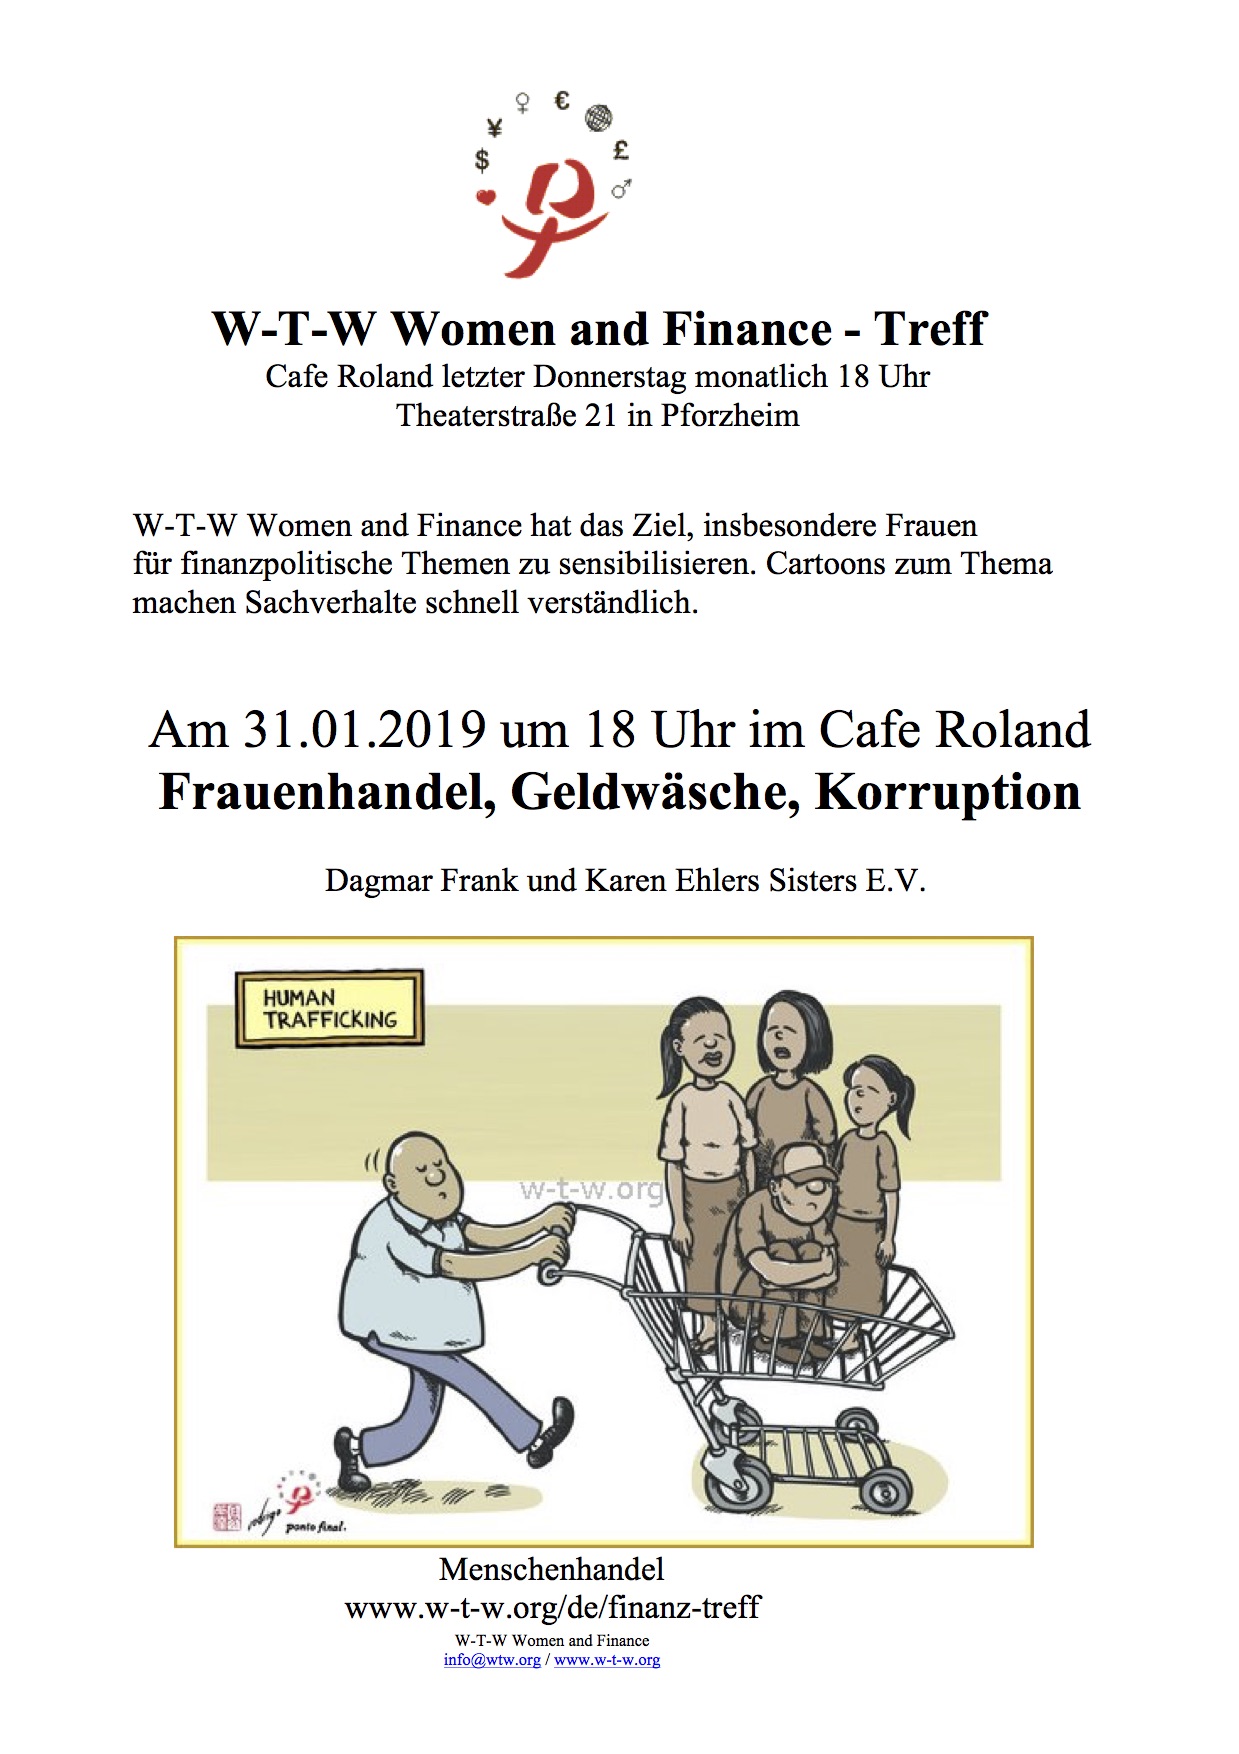 Frauenhandel, Geldwäsche, Korruption @ W-T-W Women and Finance-Treff